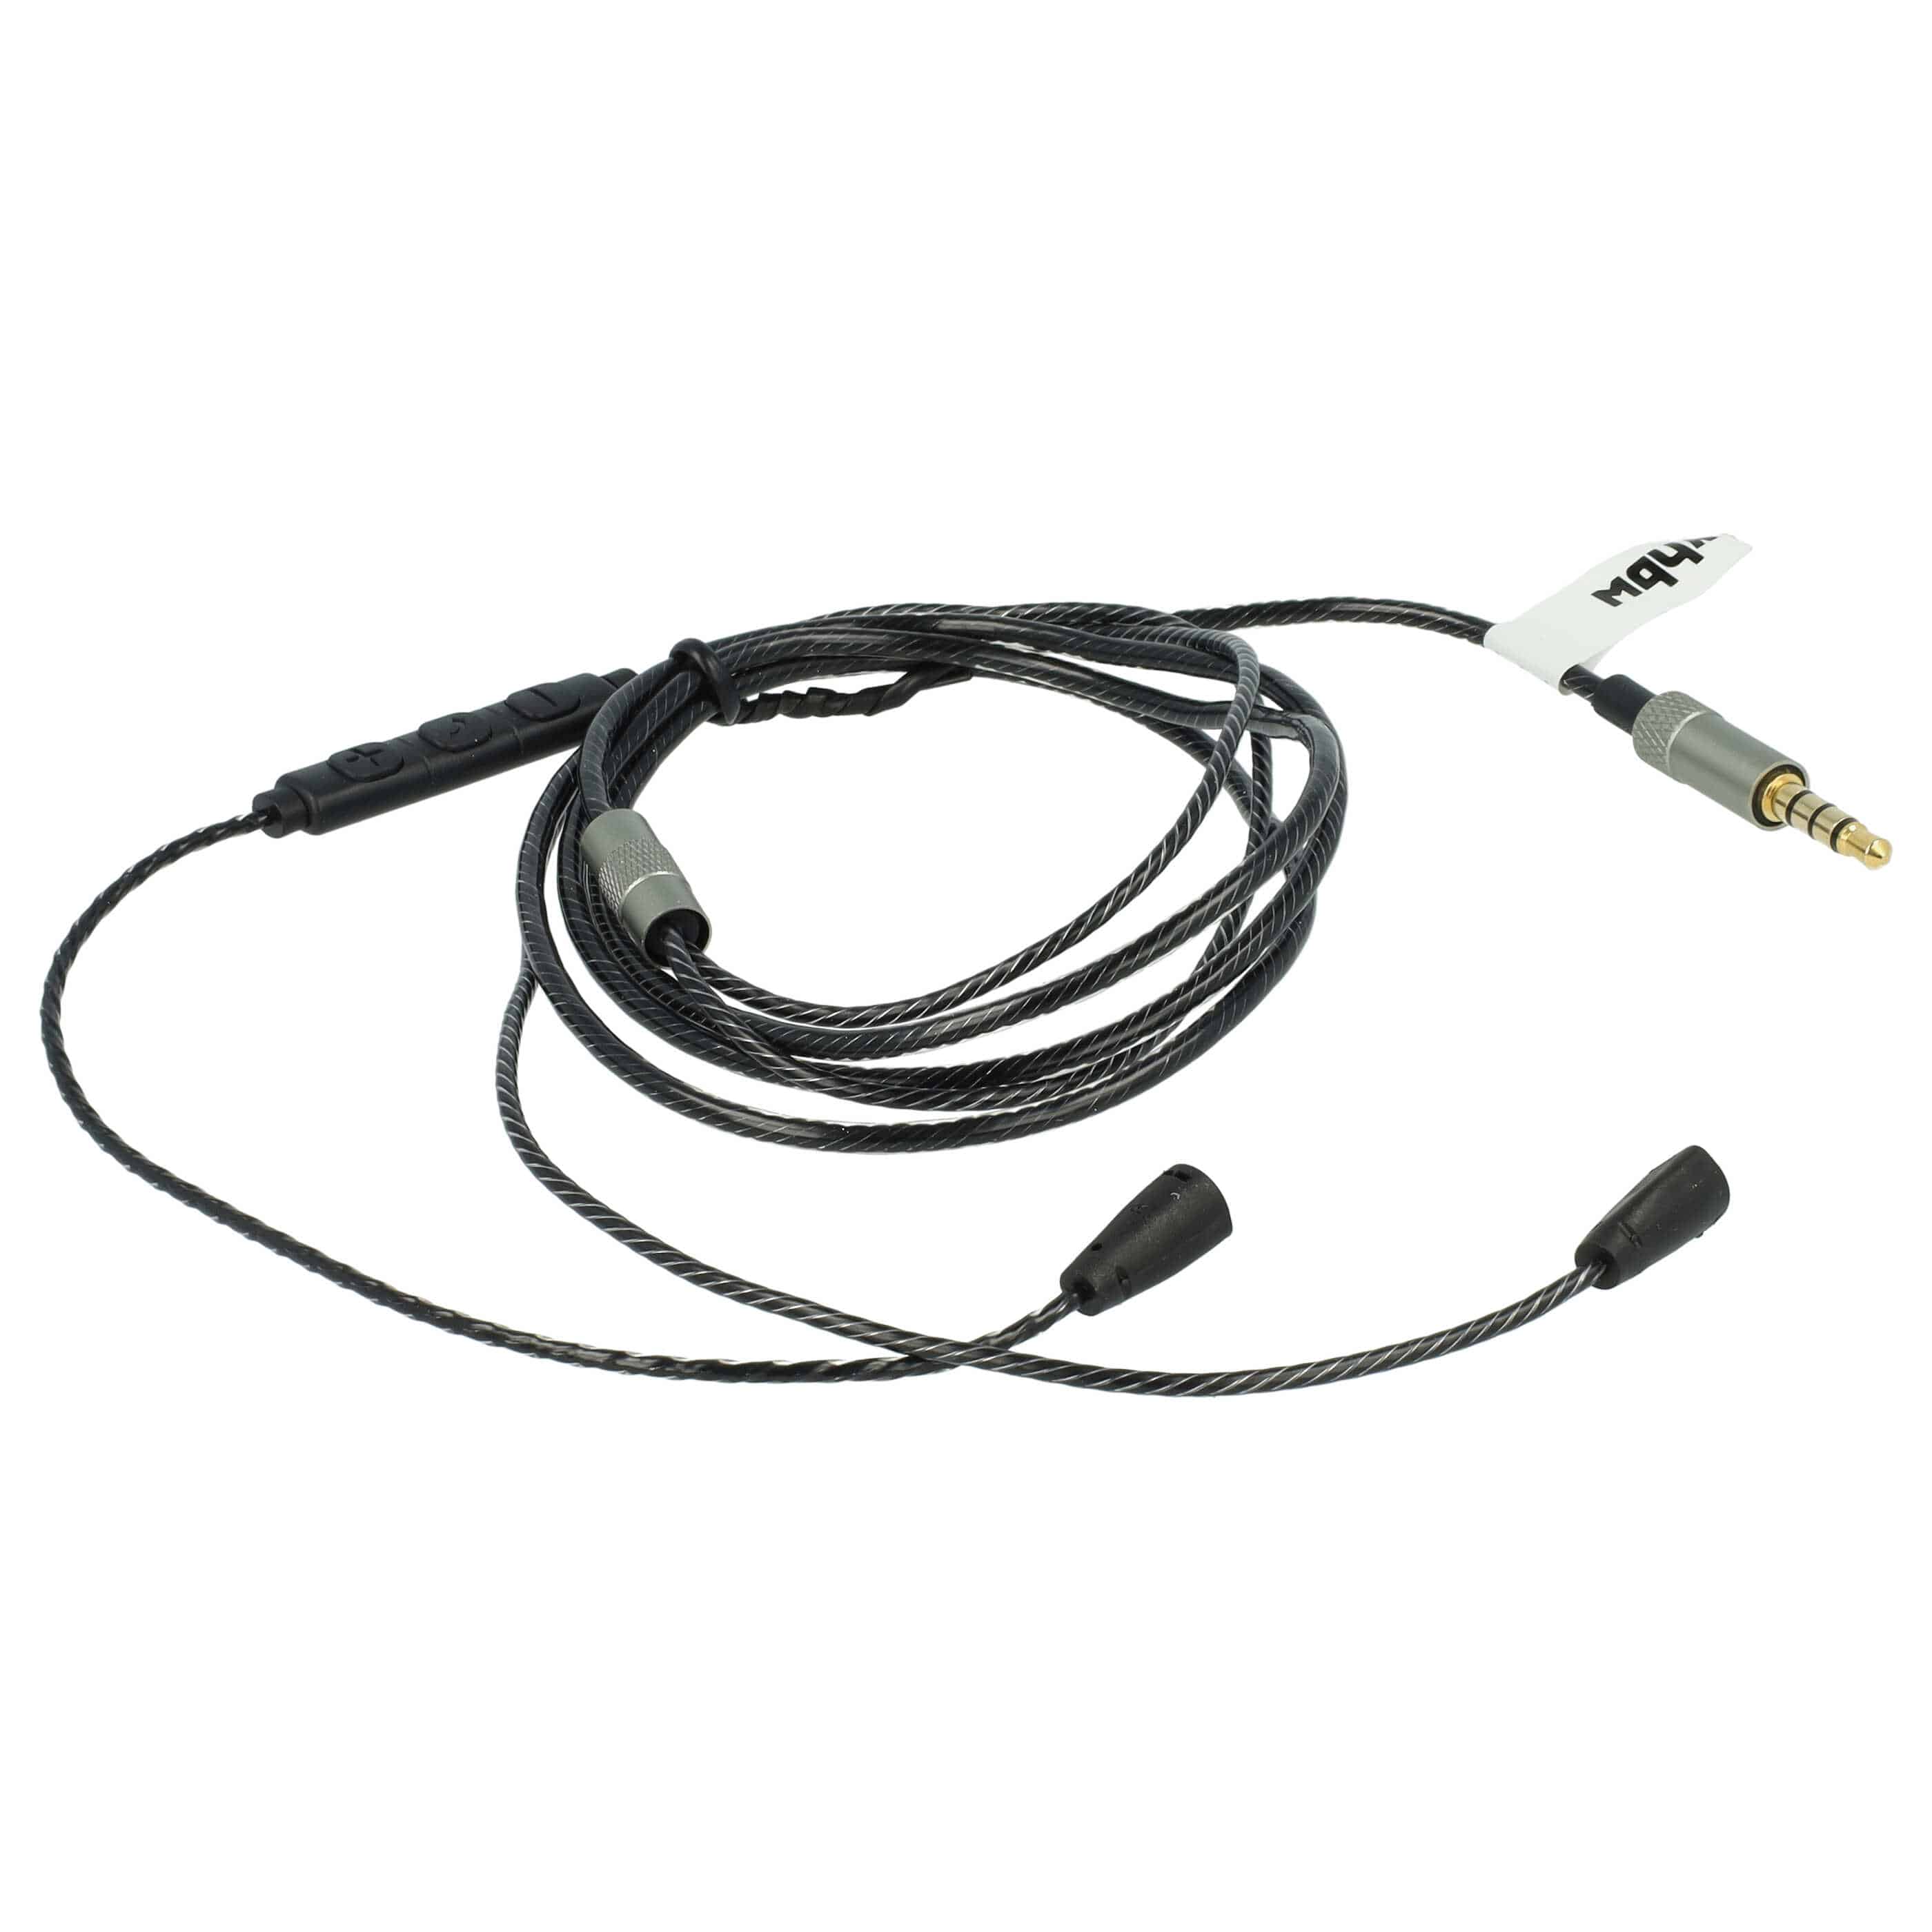 Headphones Cable suitable for Sennheiser IE8 etc., 120 cm